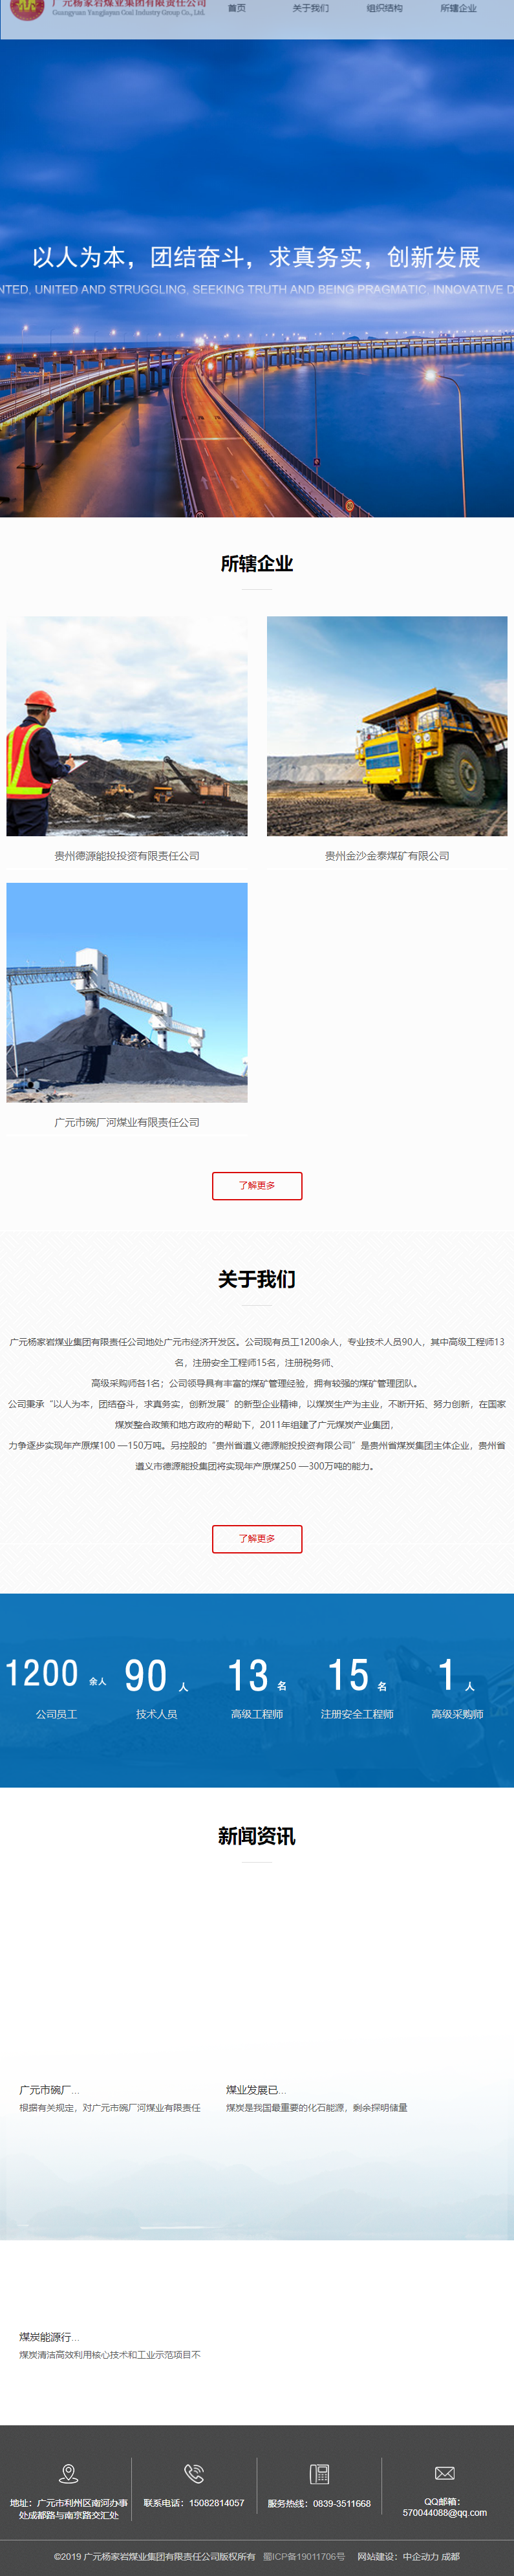 广元杨家岩煤业集团有限责任公司网站案例